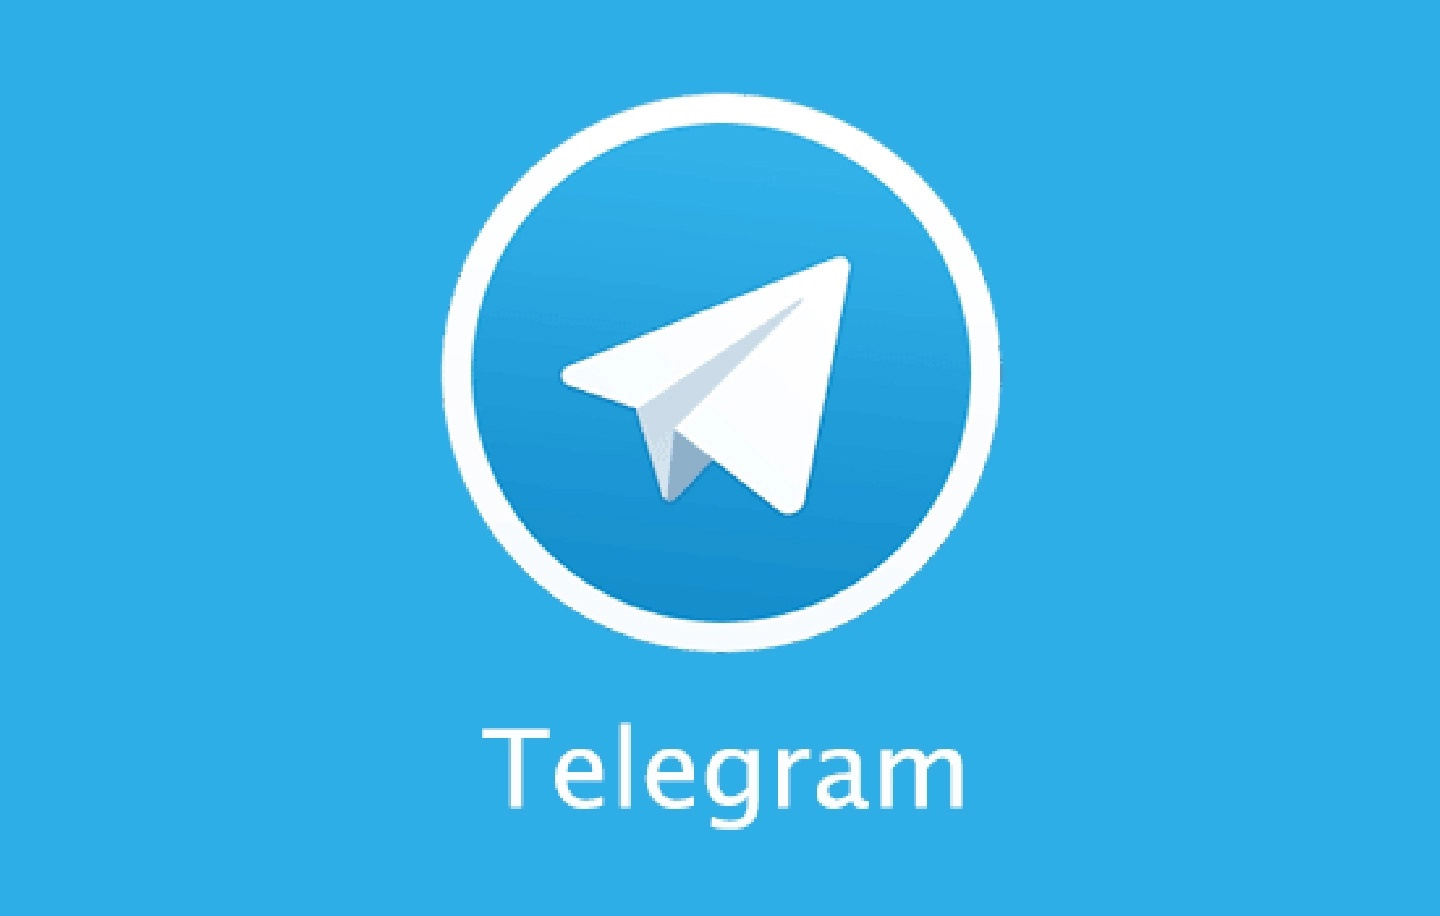 Скачать бесплатно на андроид телеграмм на русском языке на компьютер бесплатно фото 107